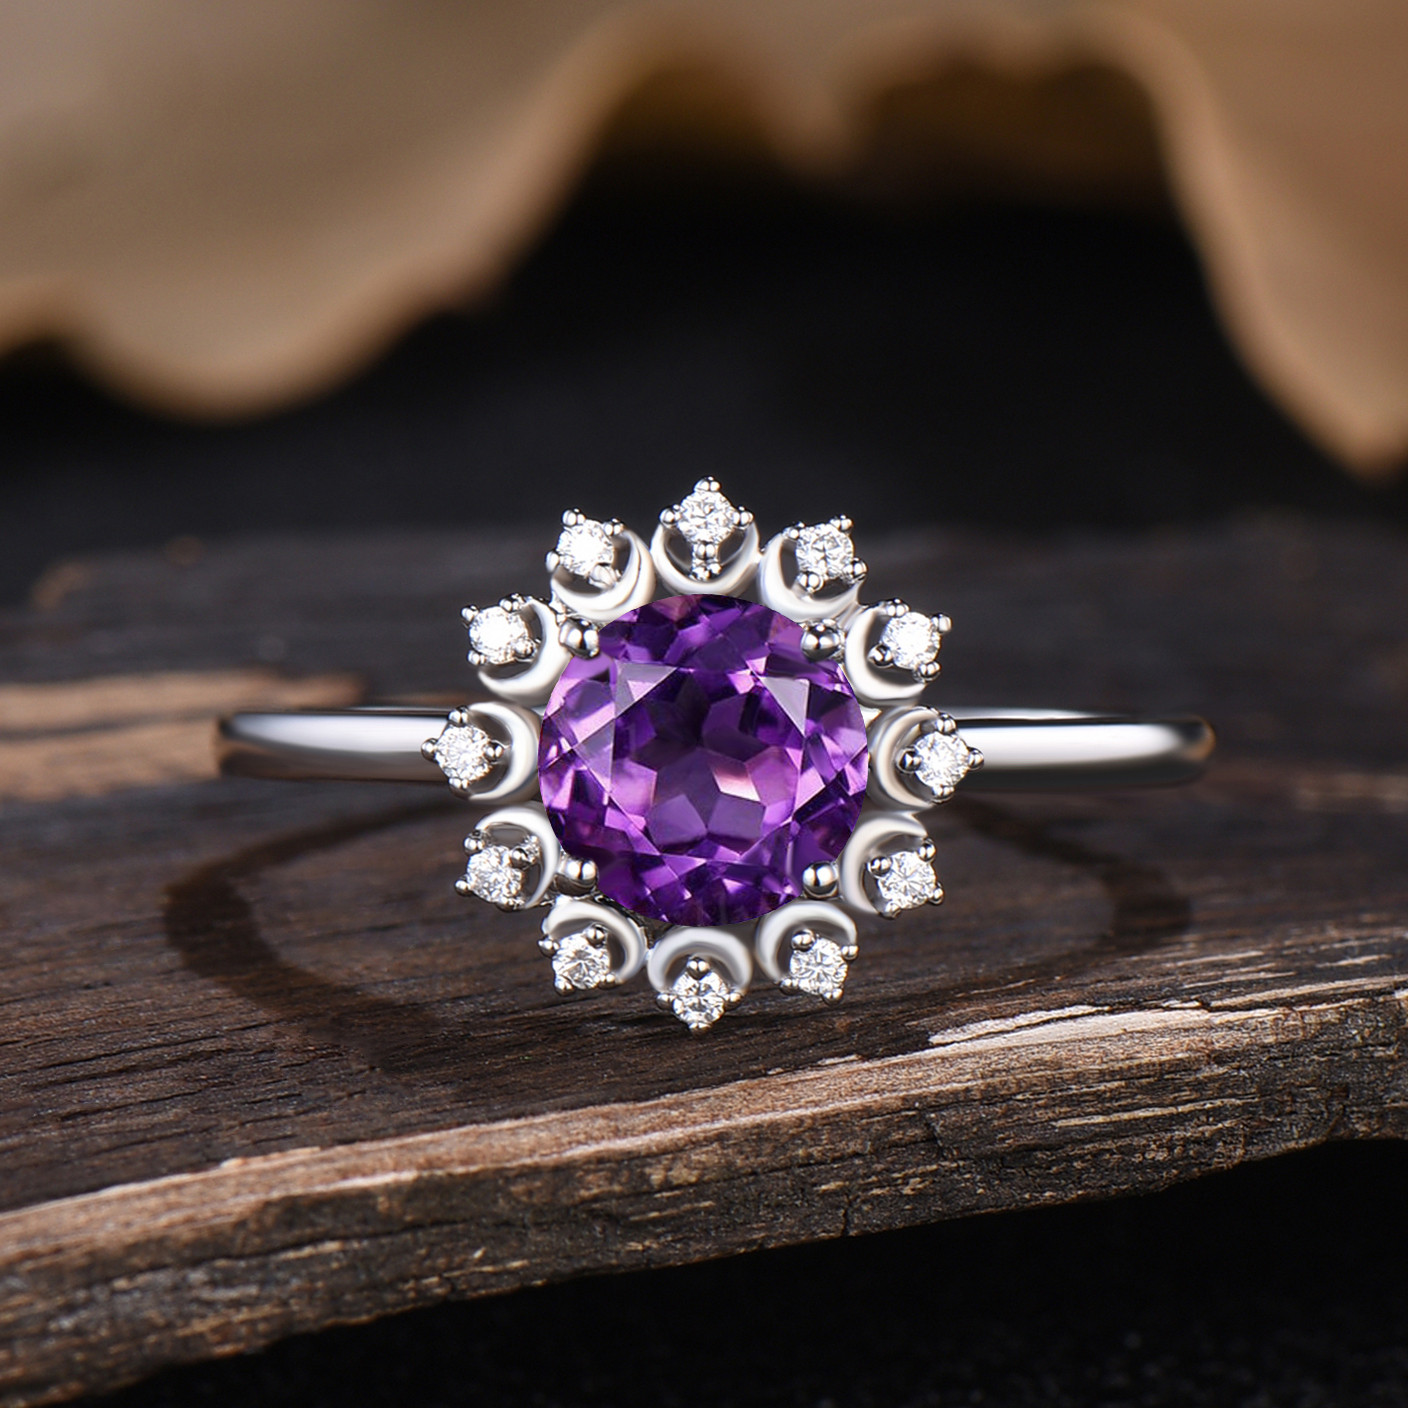 18金リング K18刻印有り天然紫水晶 宝石 指輪